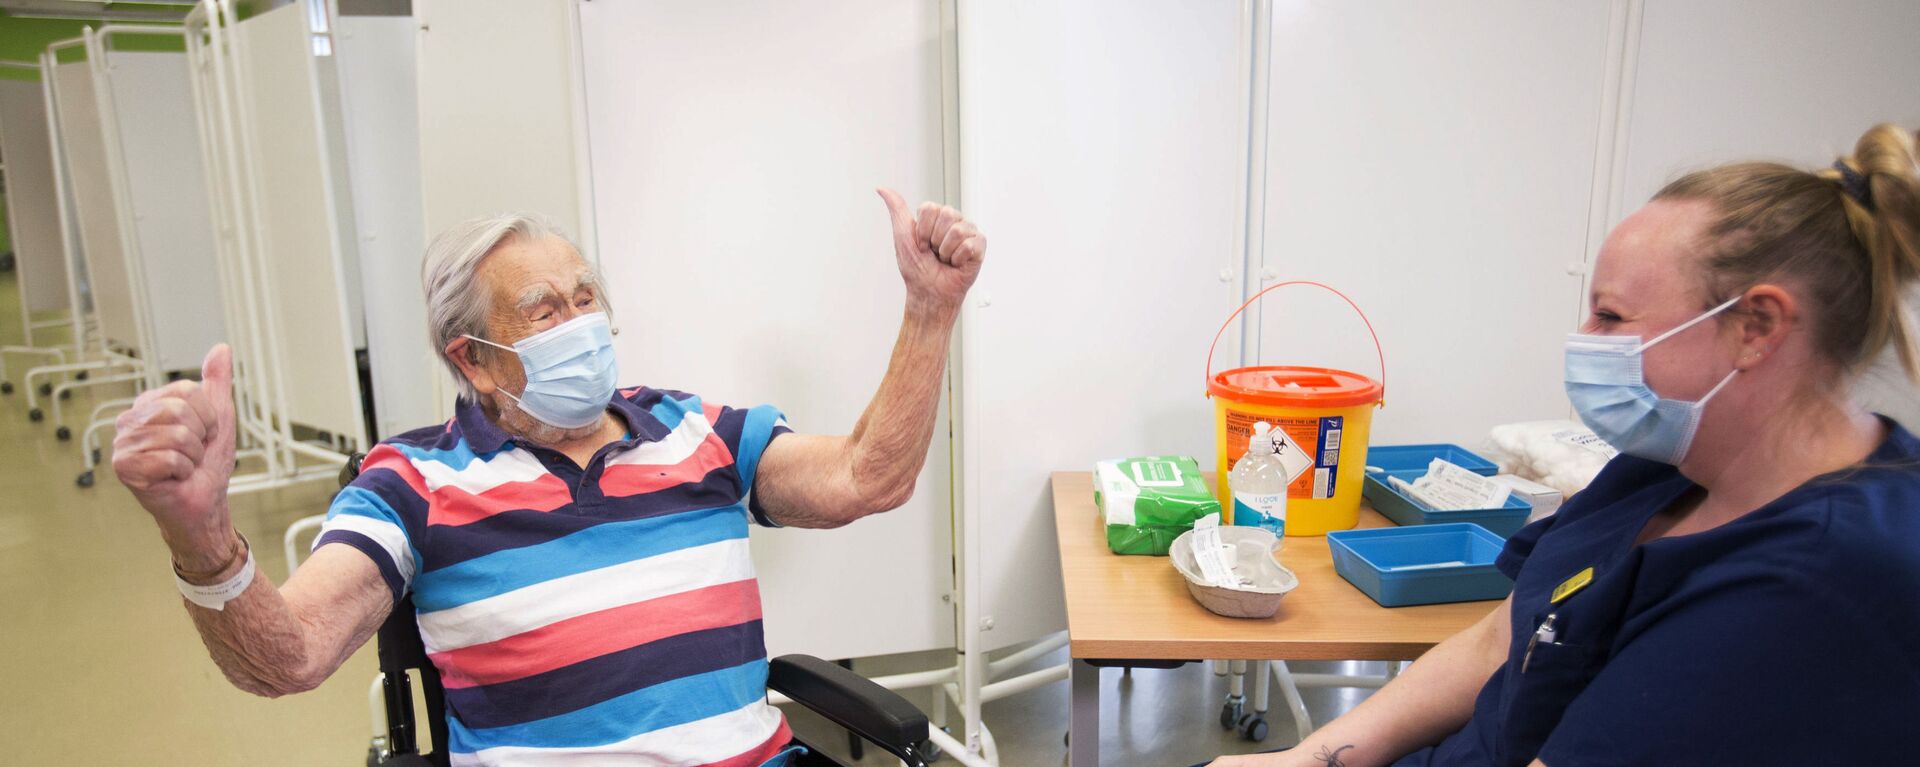 98-летний Генри (Джек) Воукс после вакцинации Pfizer-BioNTech в Бристоле, Англия - Sputnik Латвия, 1920, 23.06.2021